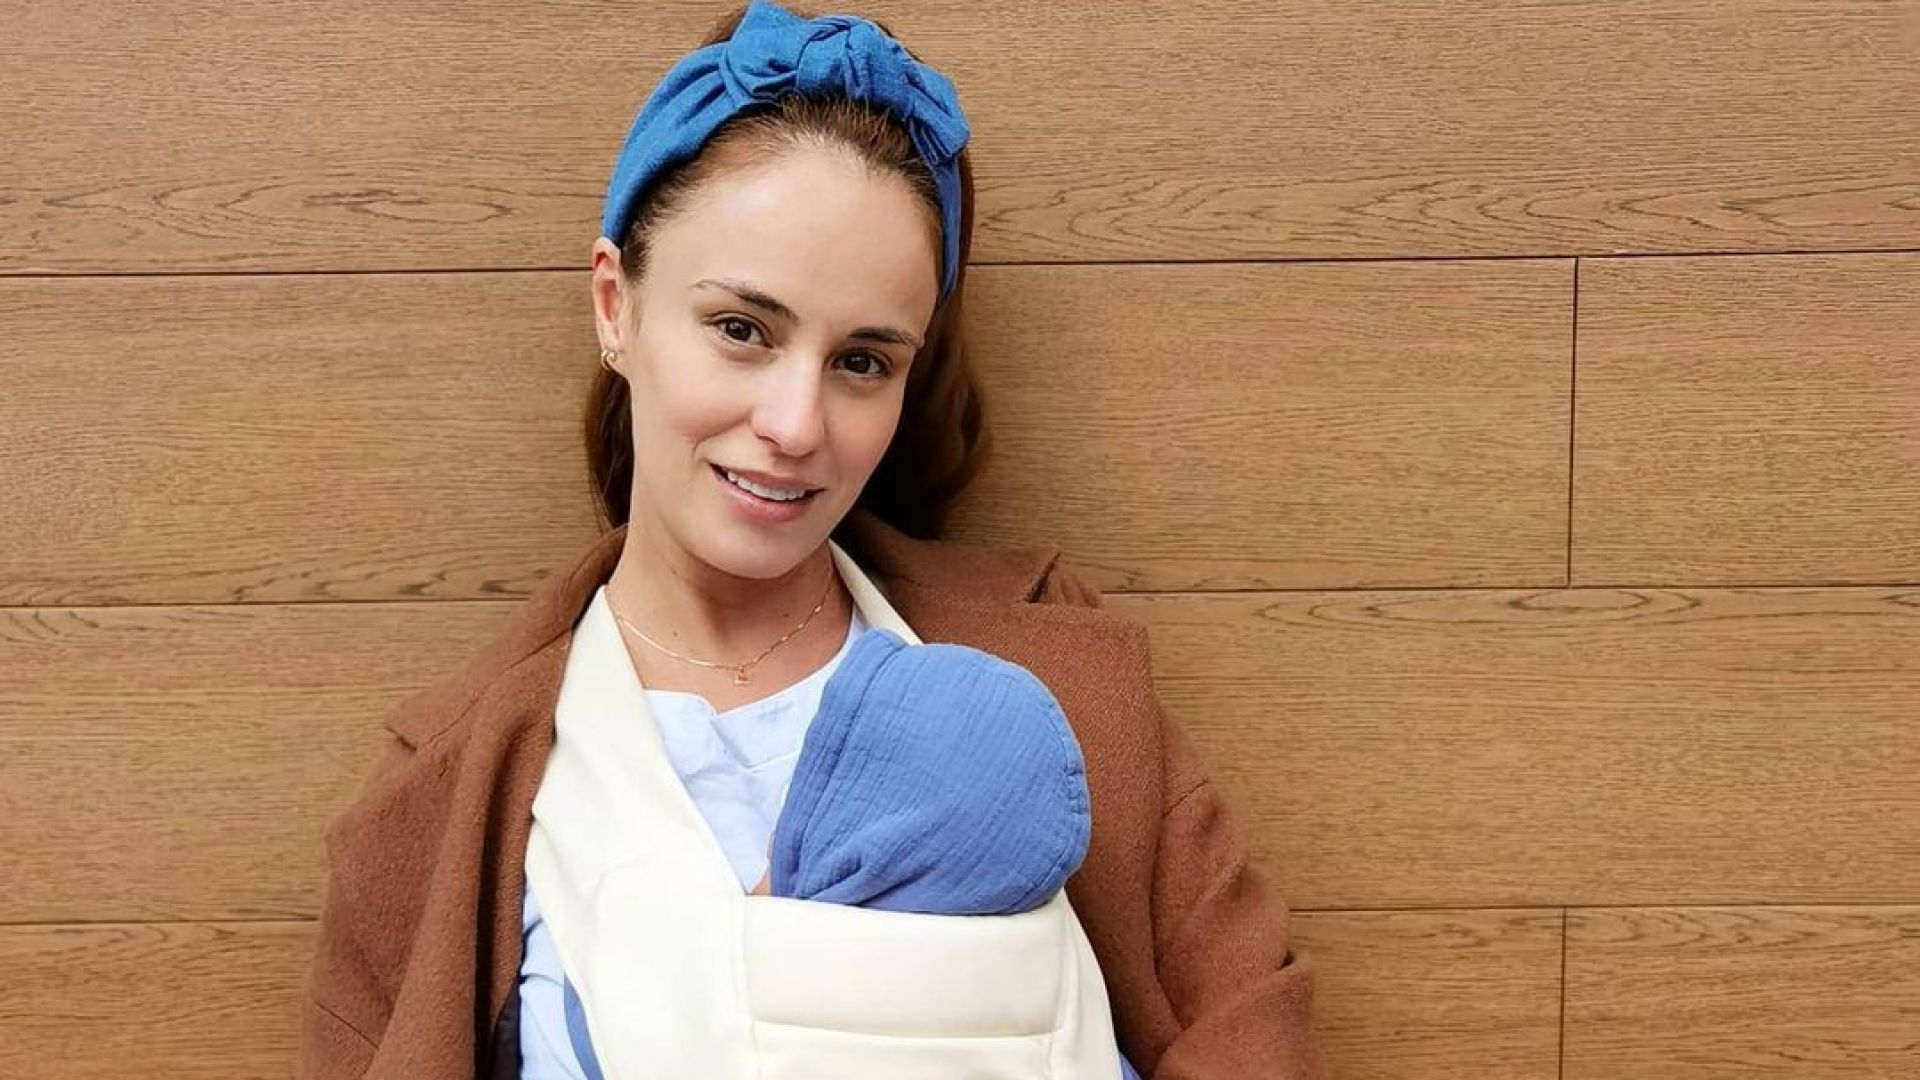 Радина Кърджилова се наслаждава на възможността да носи бебето си в слинг